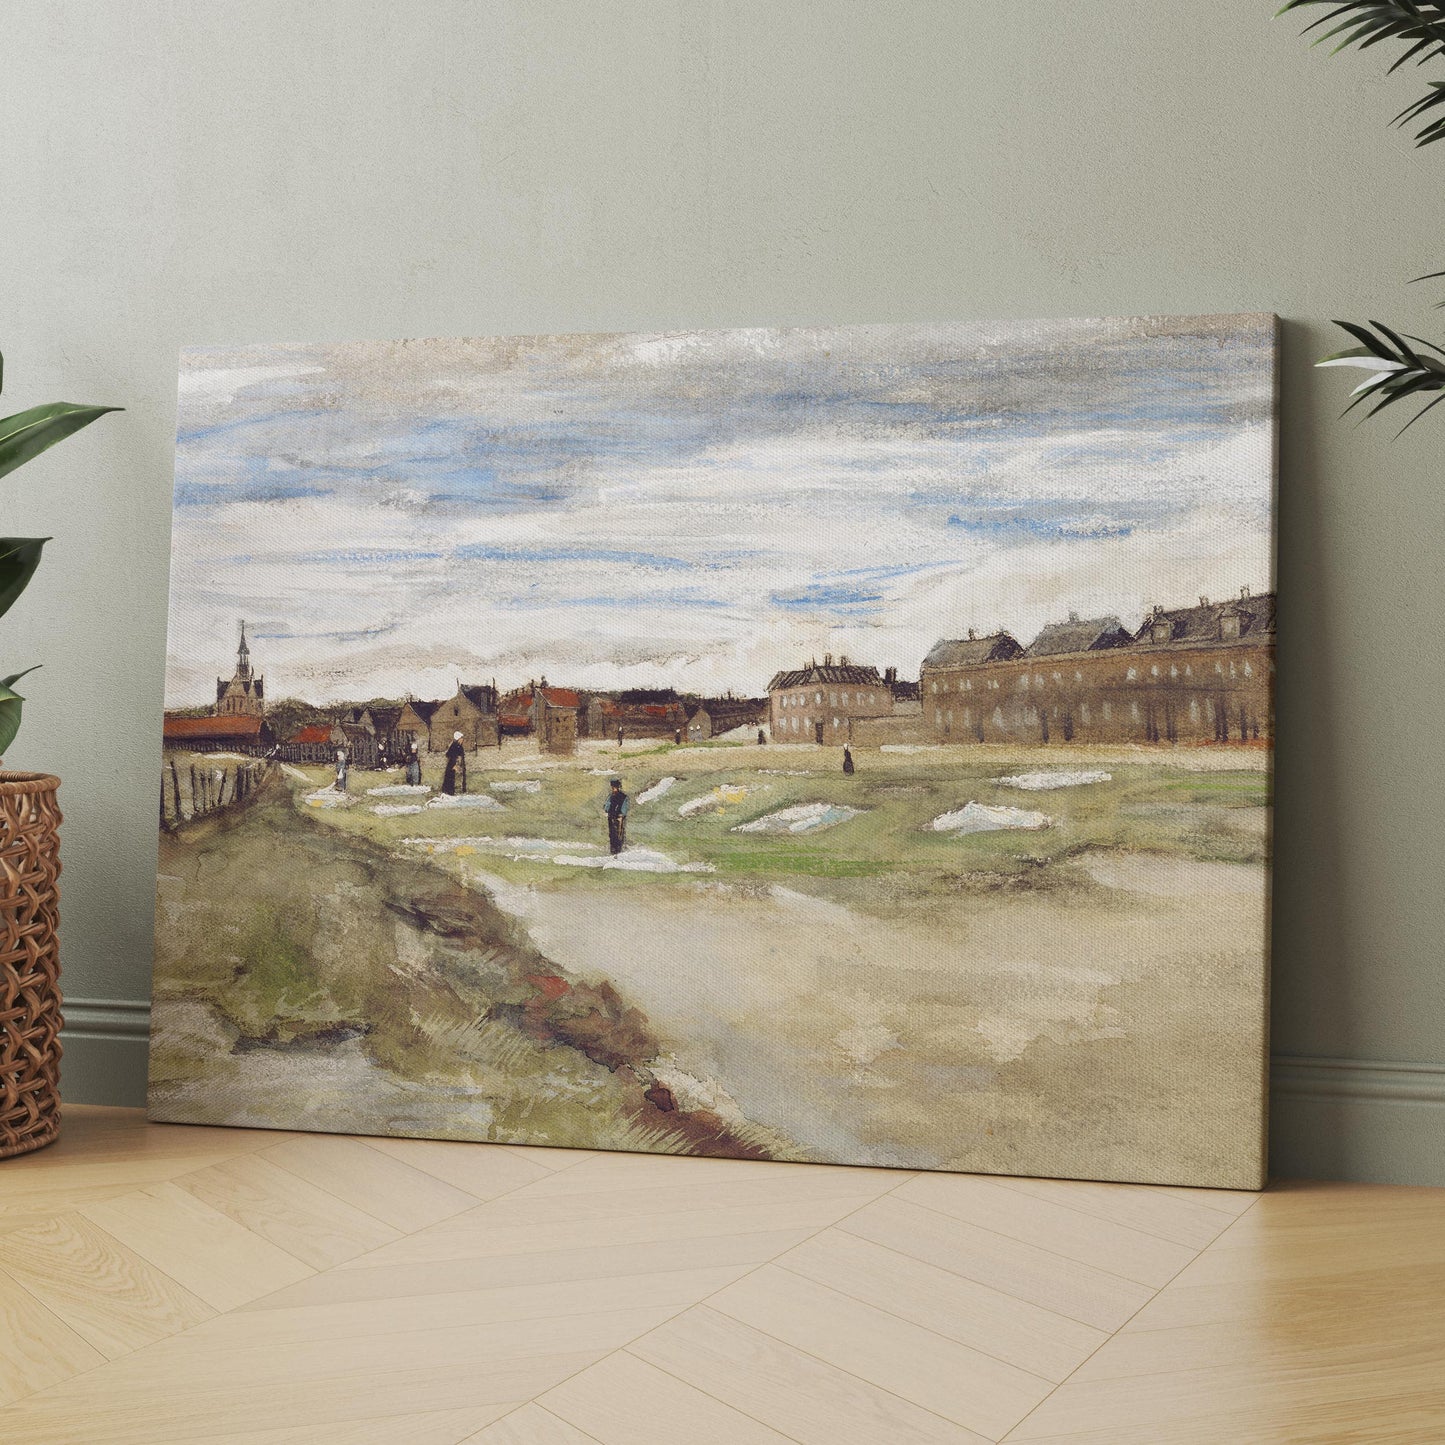 Bleaching Ground at Scheveningen (1882) by Van Gogh